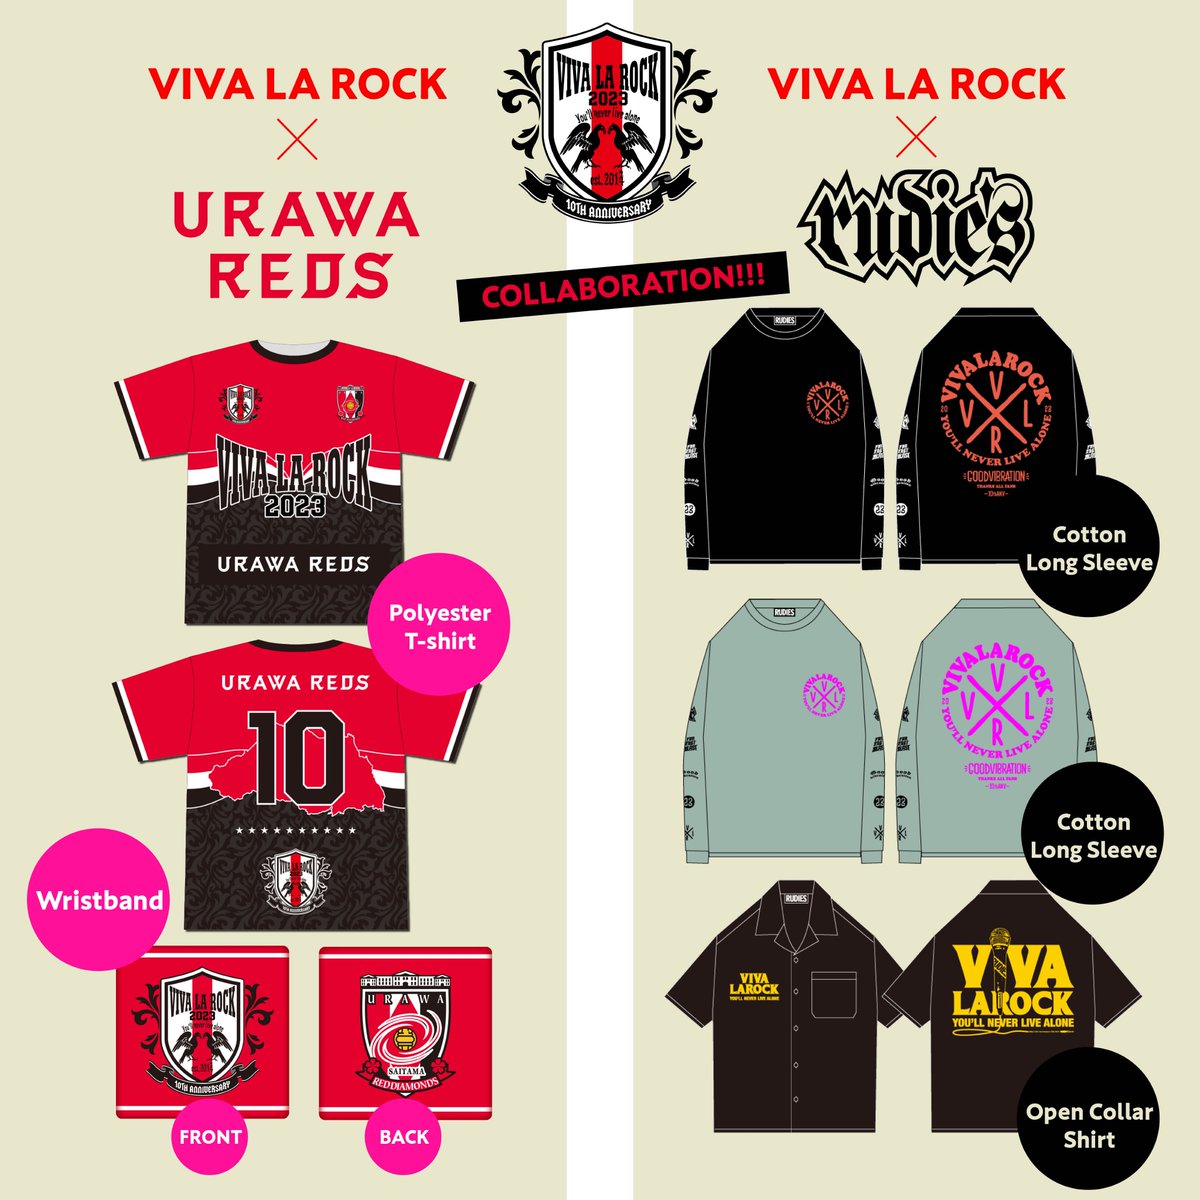 VIVA LA ROCK RUDIE’Sオープンシャツ